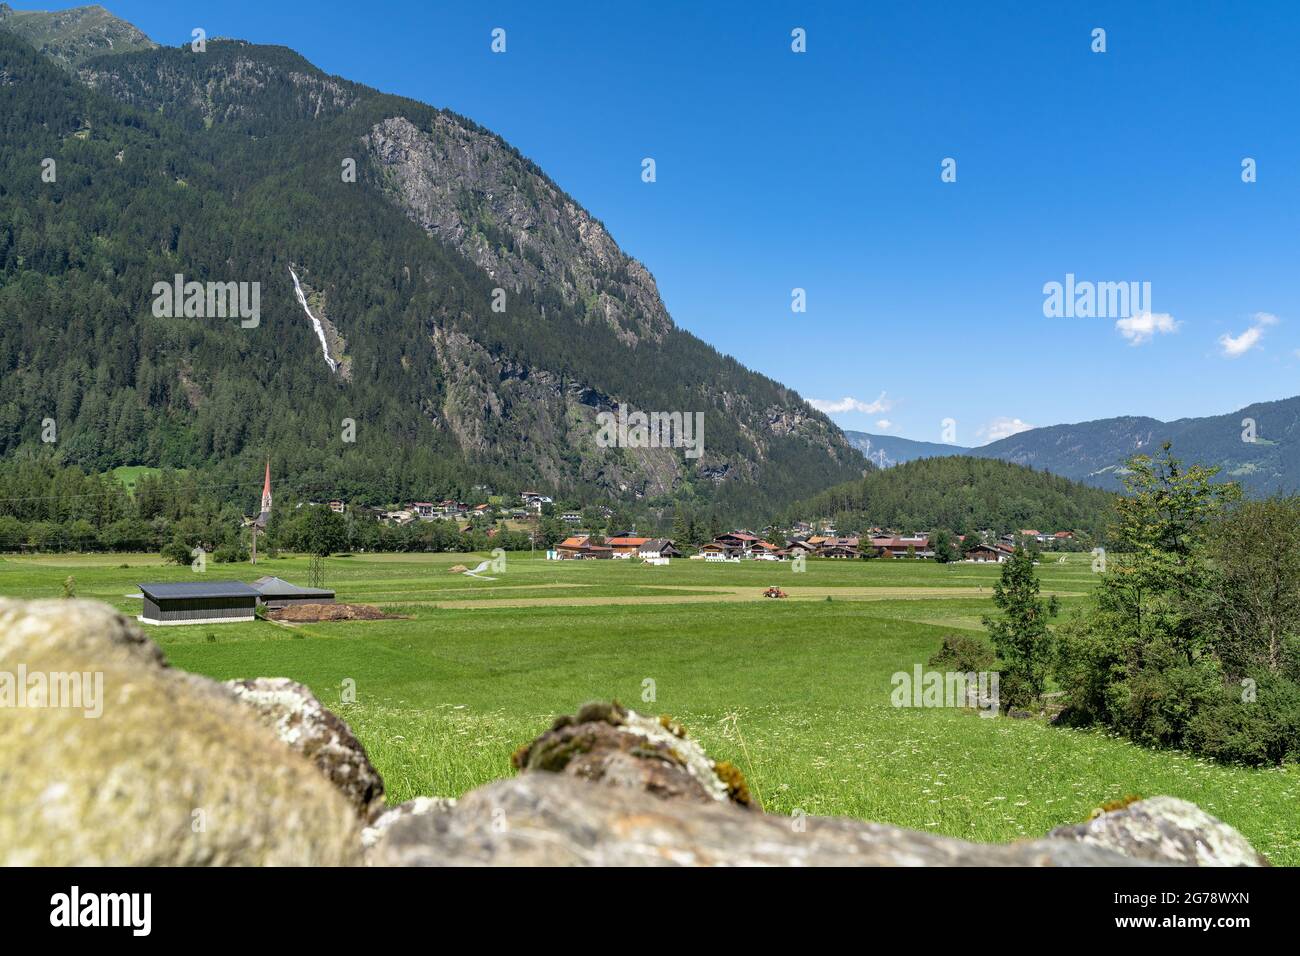 Europa, Österreich, Tirol, Ötztal Alpen, Ötztal, Blick über die landwirtschaftliche Landschaft bei Tumpen auf den Wasserfall Tumpen und die Armelenwand Stockfoto